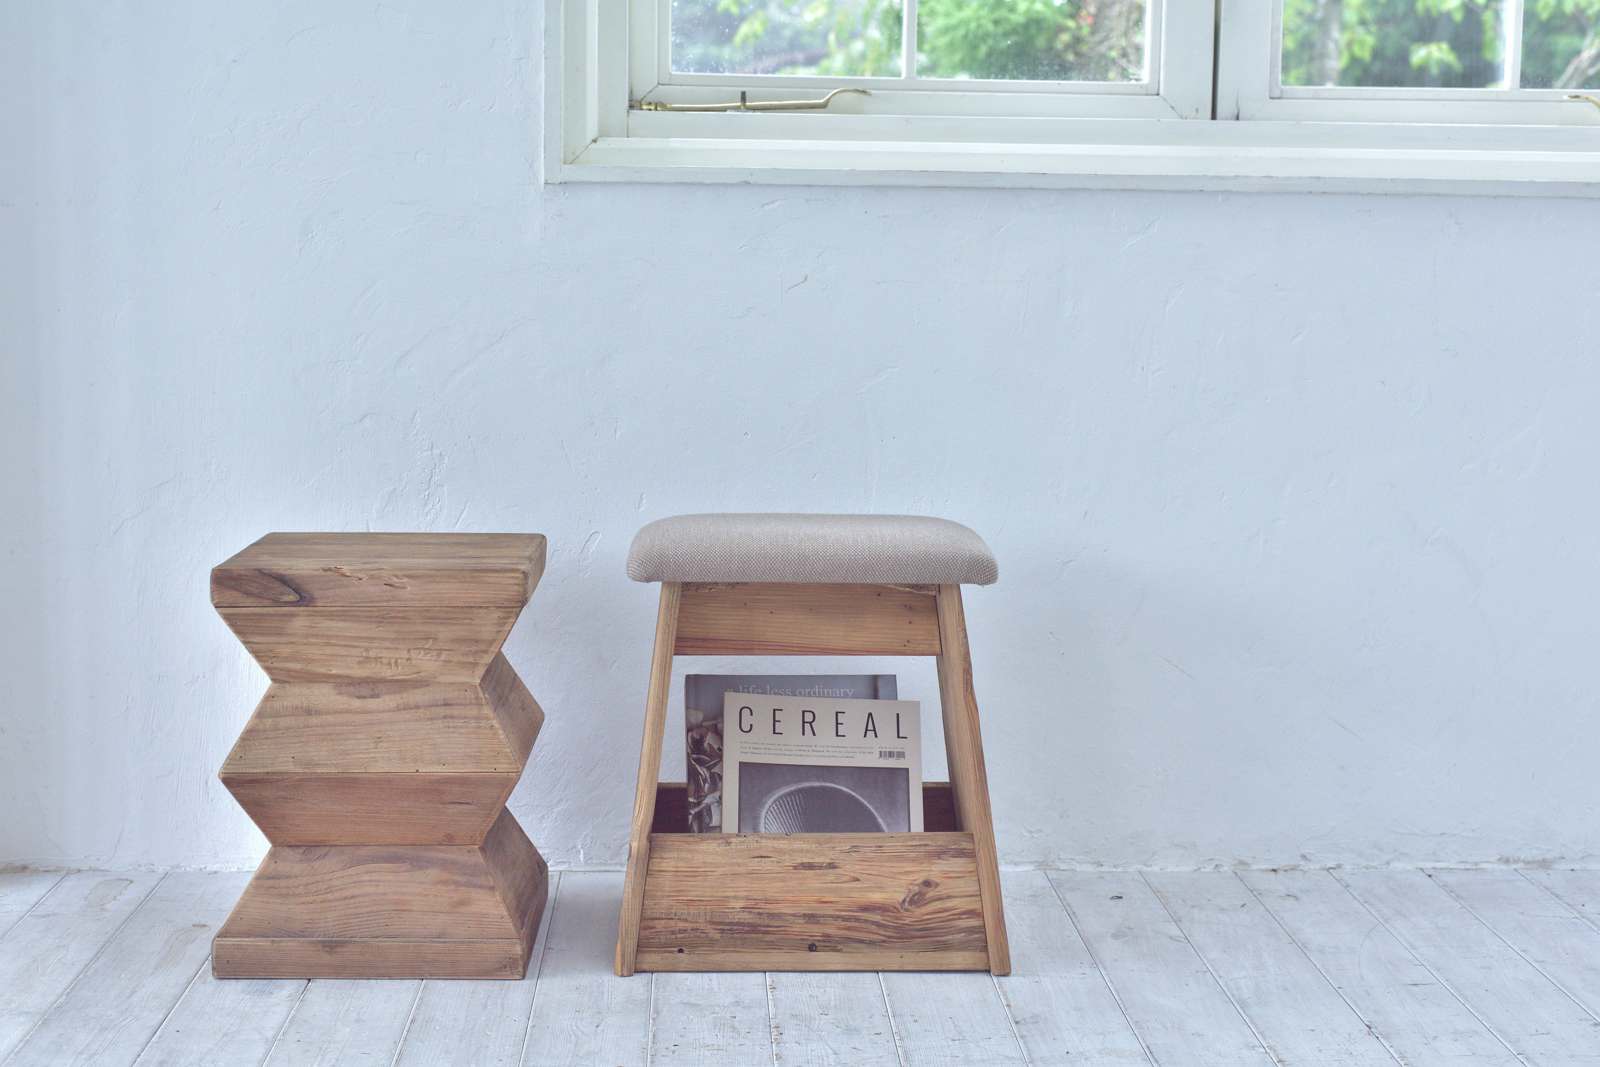 スツール 椅子 チェア ローチェア サイドテーブル ギザギザ 天然木 古 